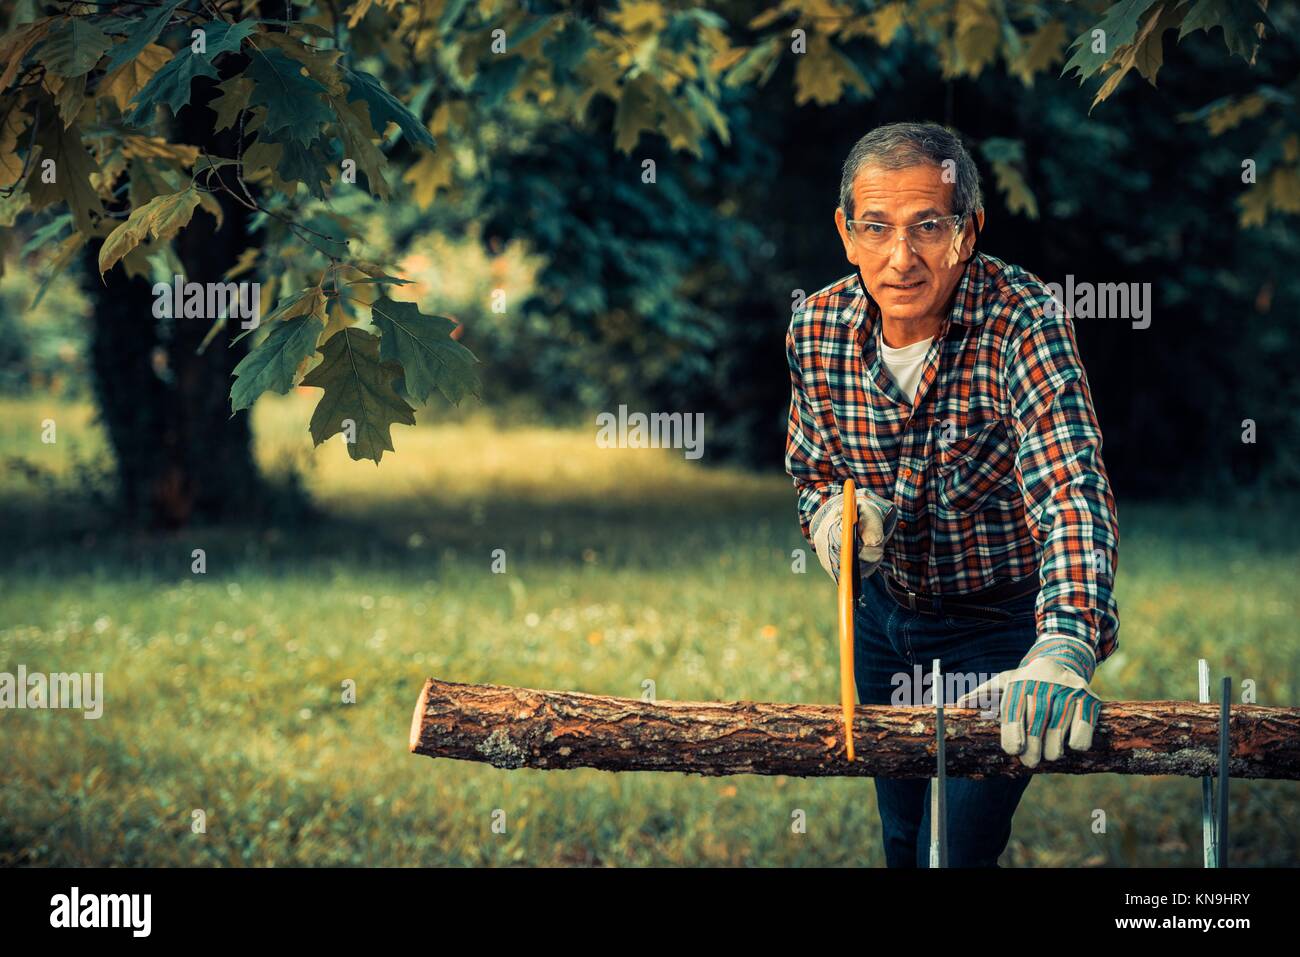 Senior man sawing a log handsaw closeup. Stock Photo